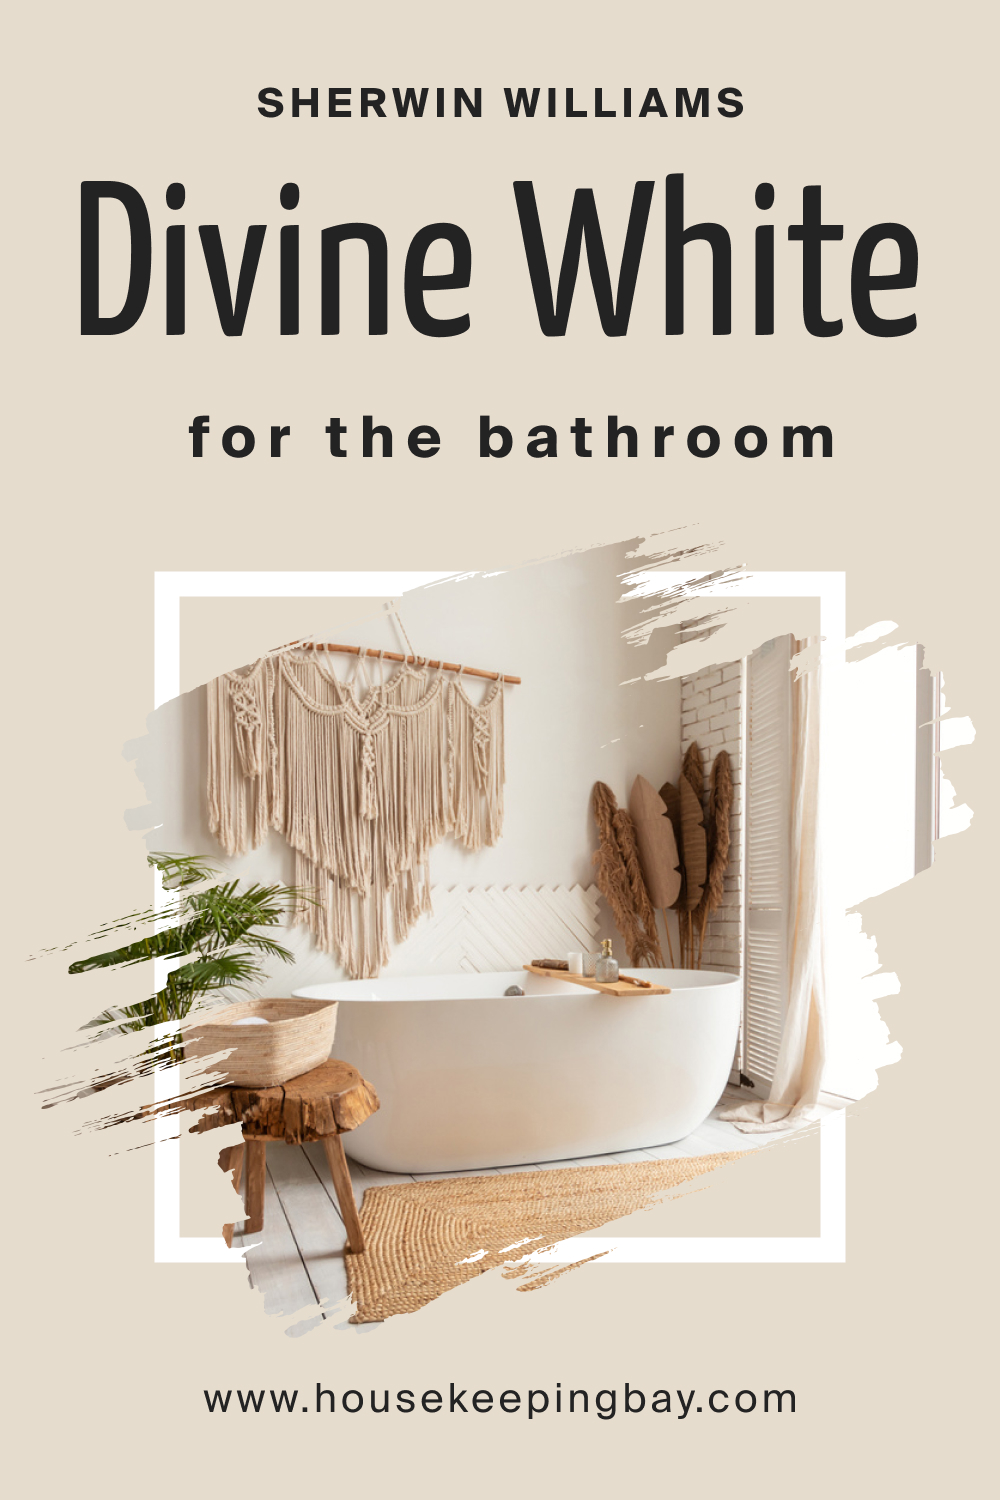 Sherwin Williams. SW Divine White in the Bathroom